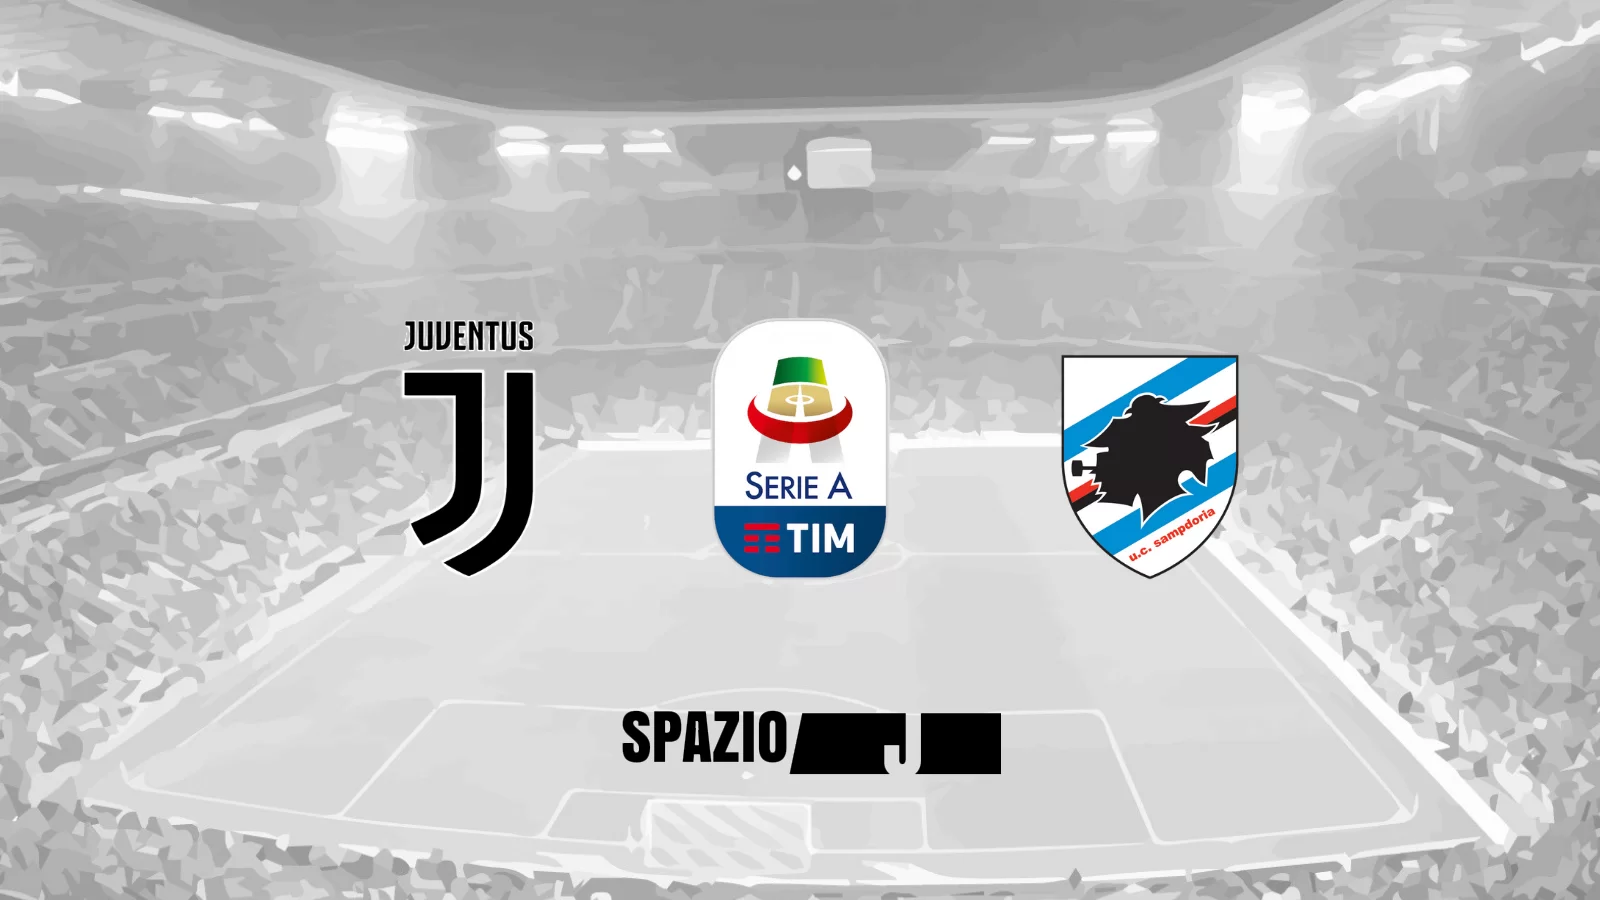 RE LIVE Juventus-Sampdoria 2-1: la doppietta di CR7 stende la Samp!